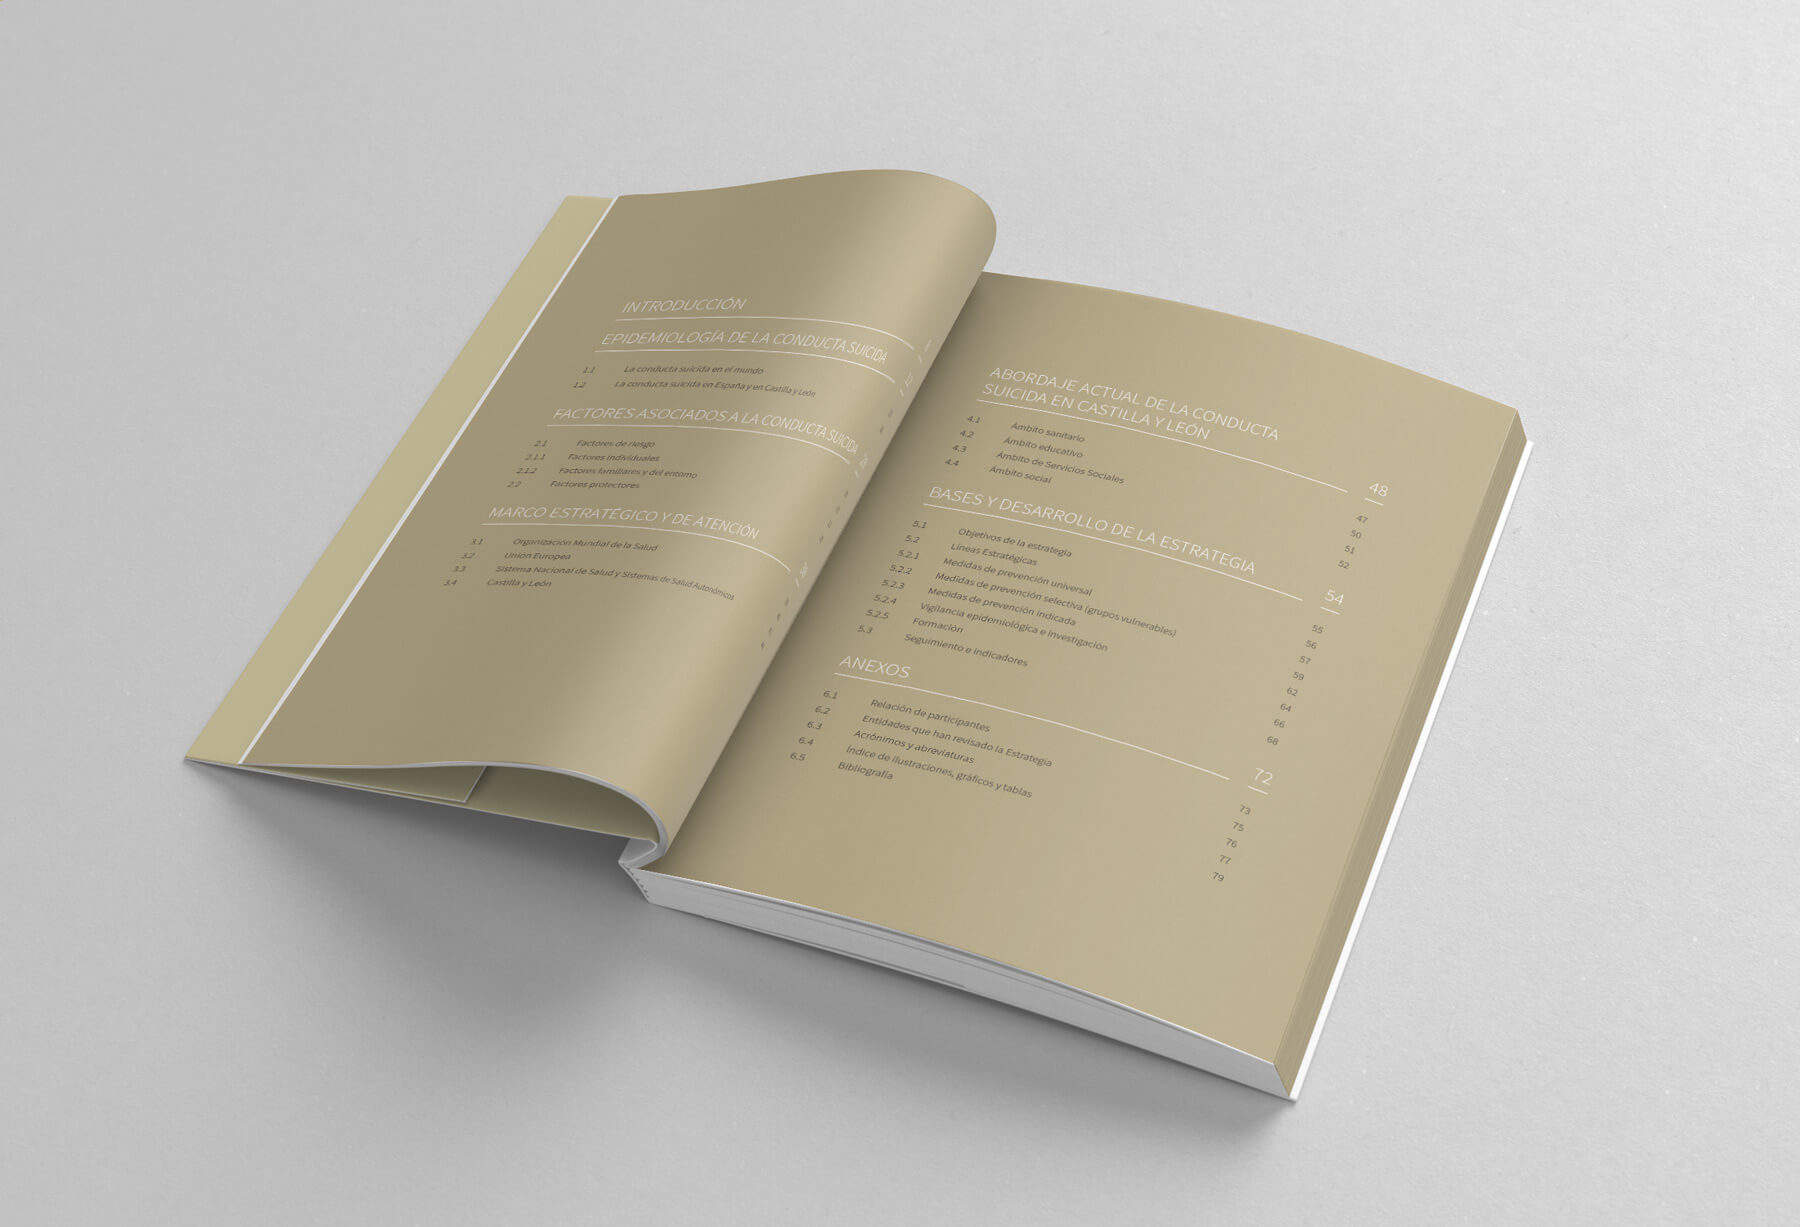 Detalle del diseño editorial libro